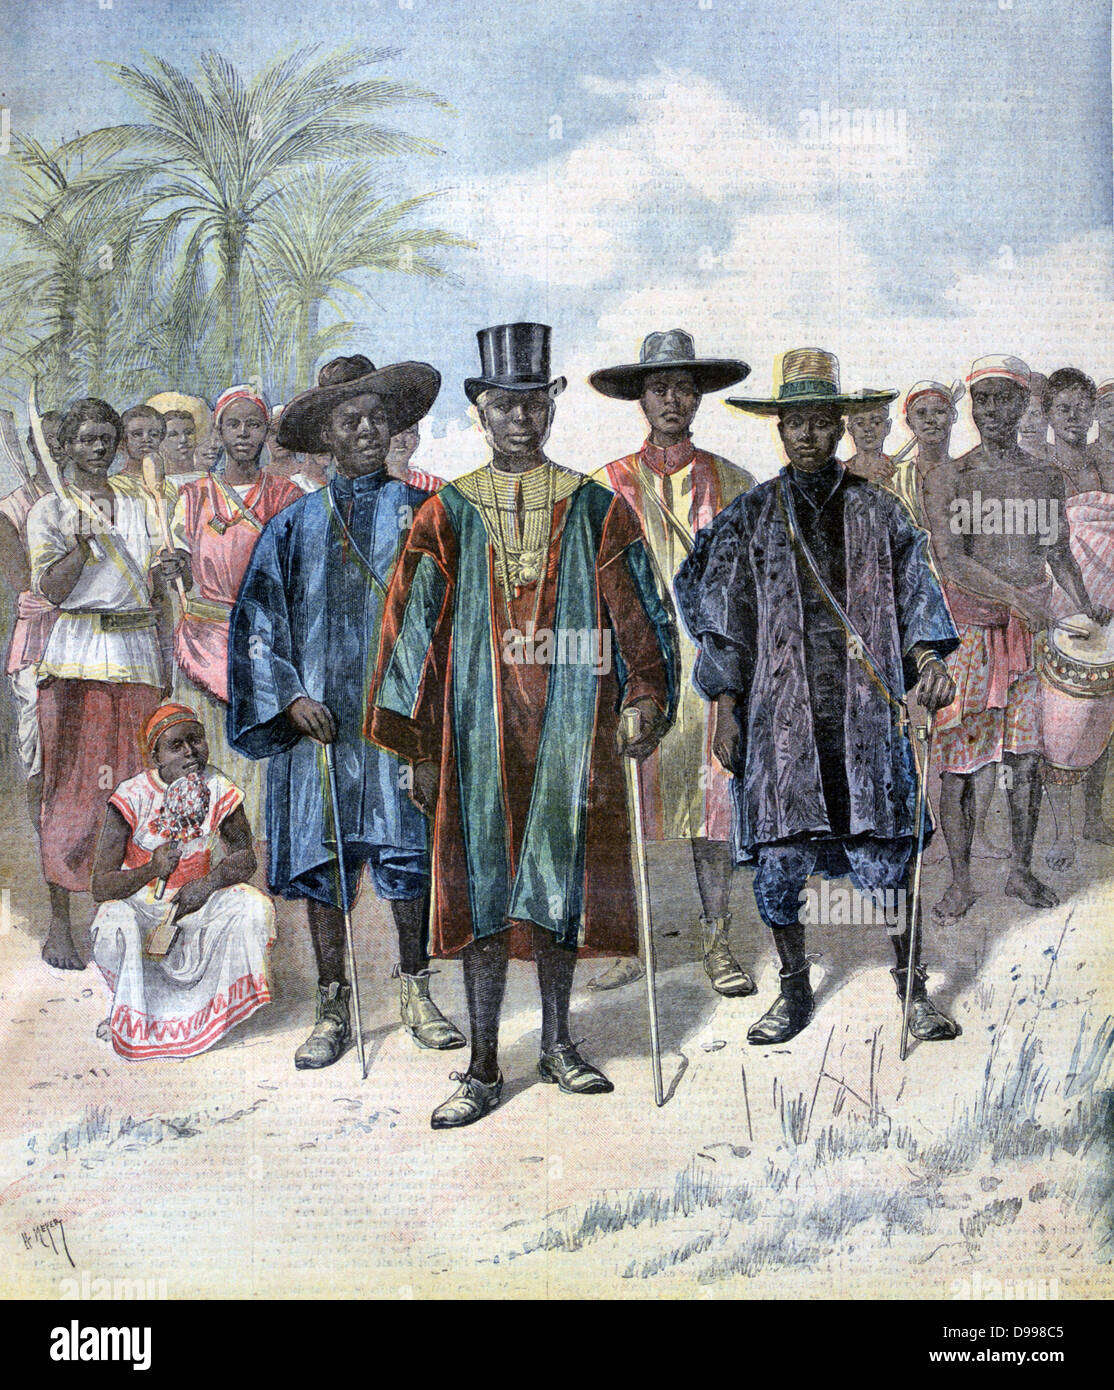 Prinz Kosko und vier des Königs von Dahomey Tiffa der Minister und ihrem Gefolge in der Champ-de-Mars, Paris. Von "Le Petit Journal", Paris, 22. April 1893. Frankreich, Afrika, Kolonialismus, Benin Stockfoto